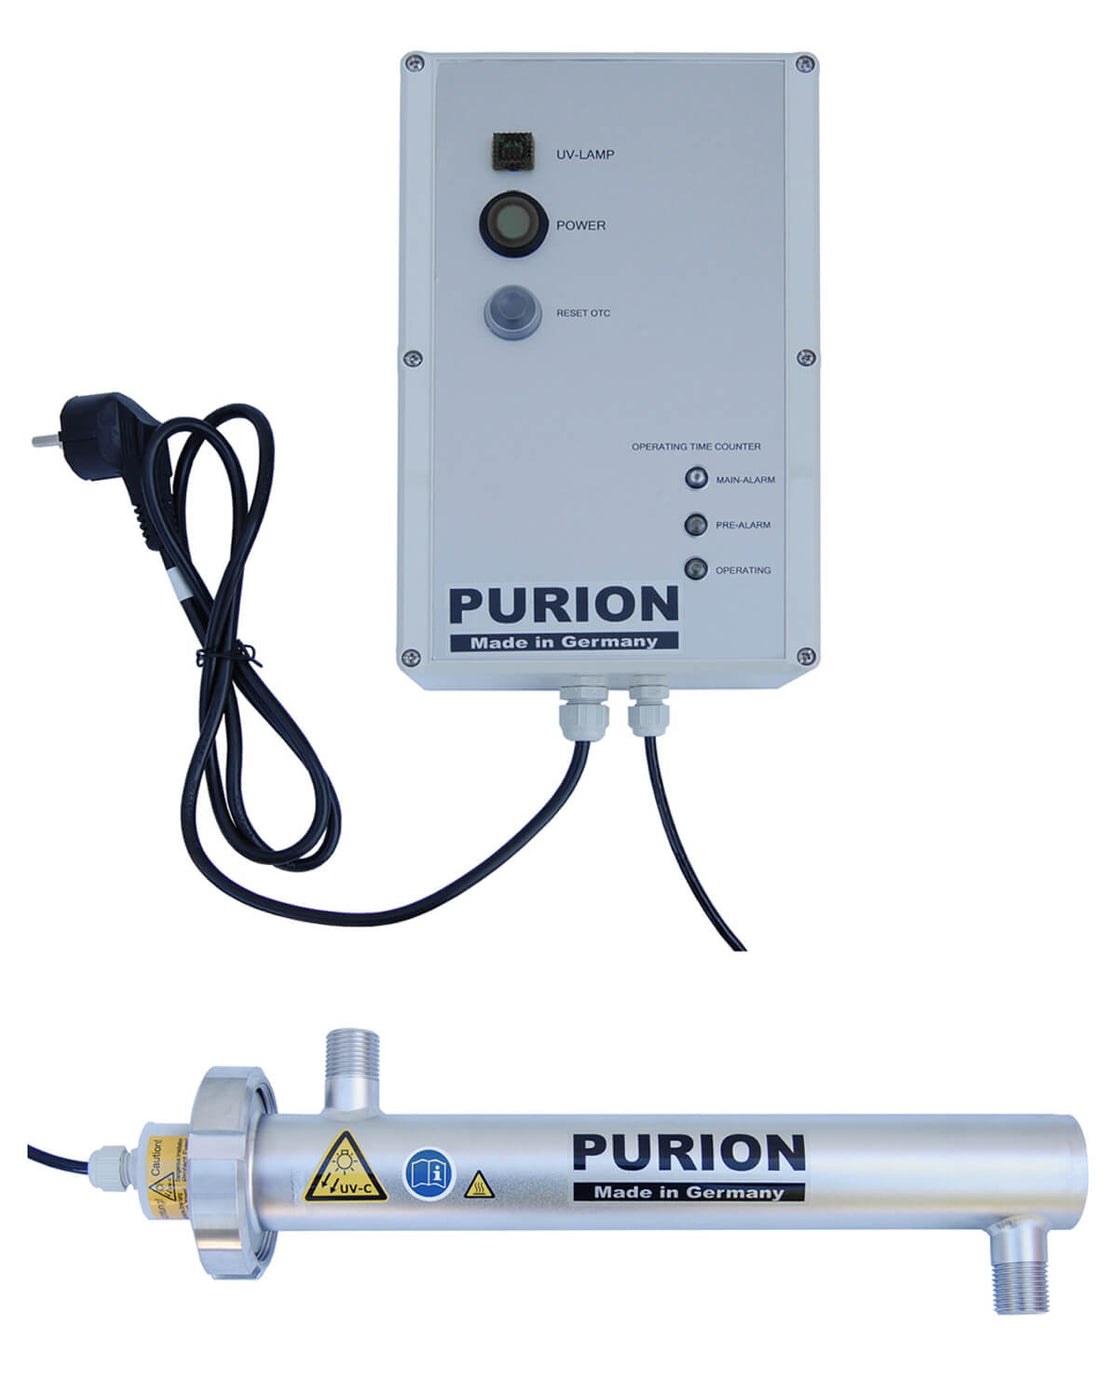 PURION 500 110 - 240 V AC OTC von UV Concept GmbH ist eine Desinfektionsanlage, die durch effiziente Trinkwasseraufbereitung eine hohe Trinkwasserqualität gewährleistet.